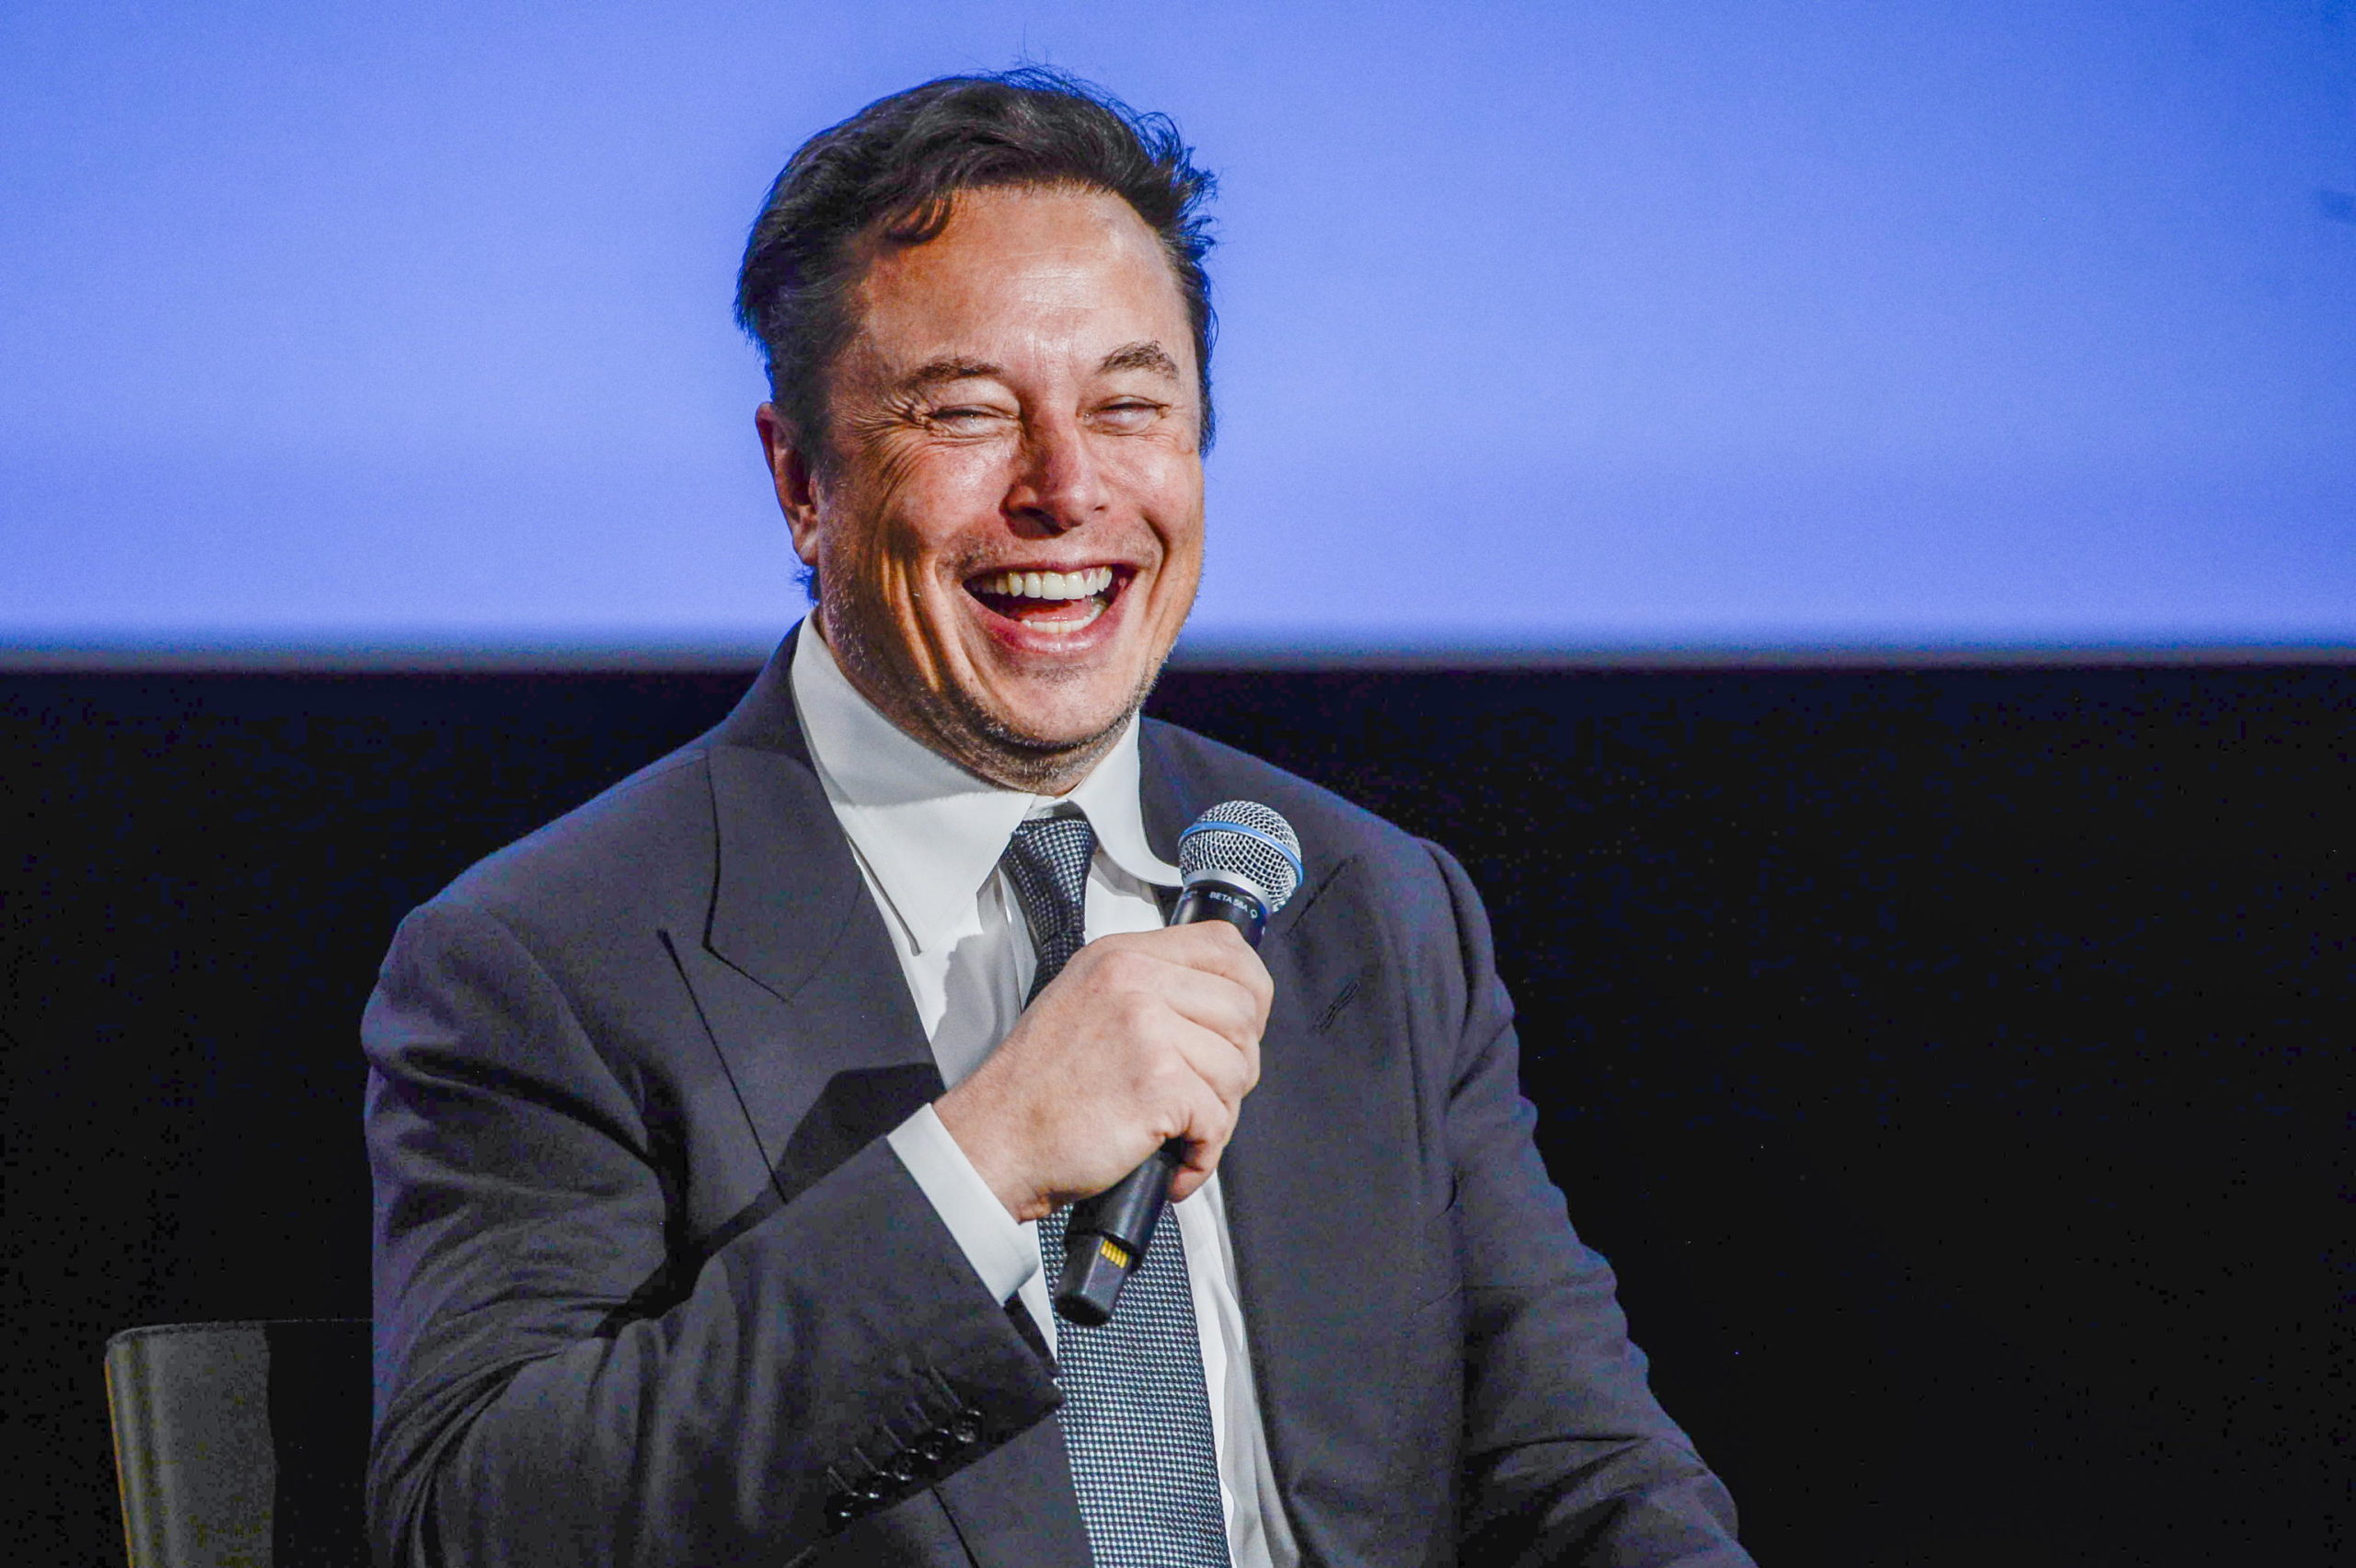 xAI di Elon Musk ottiene nuovi finanziamenti. Ora vale 24 miliardi di dollari